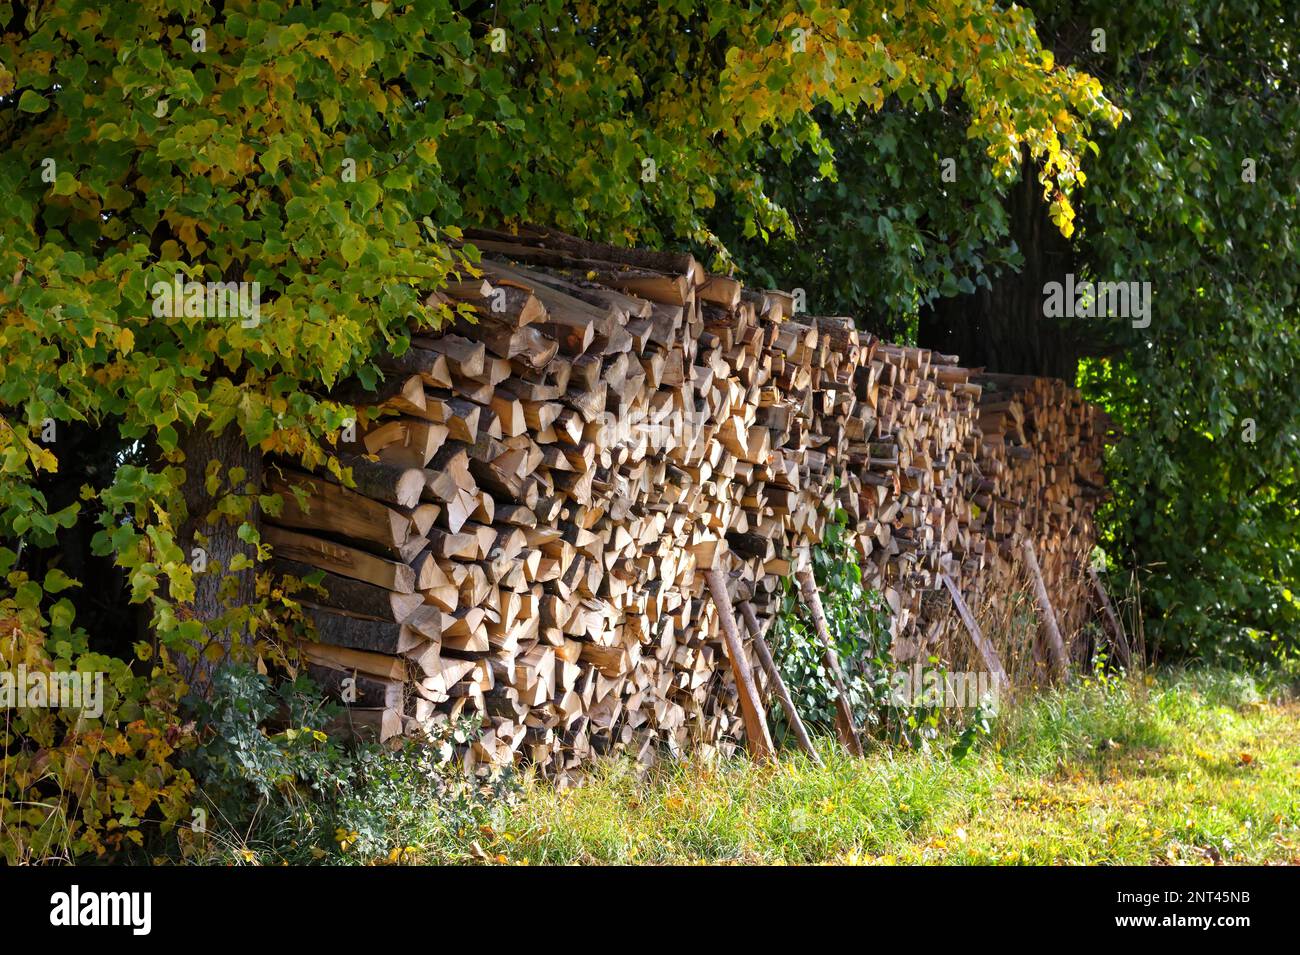 Crisi energetica in europa con prezzi sempre più alti: Legno con legno appena scaglionato e tagliato Foto Stock